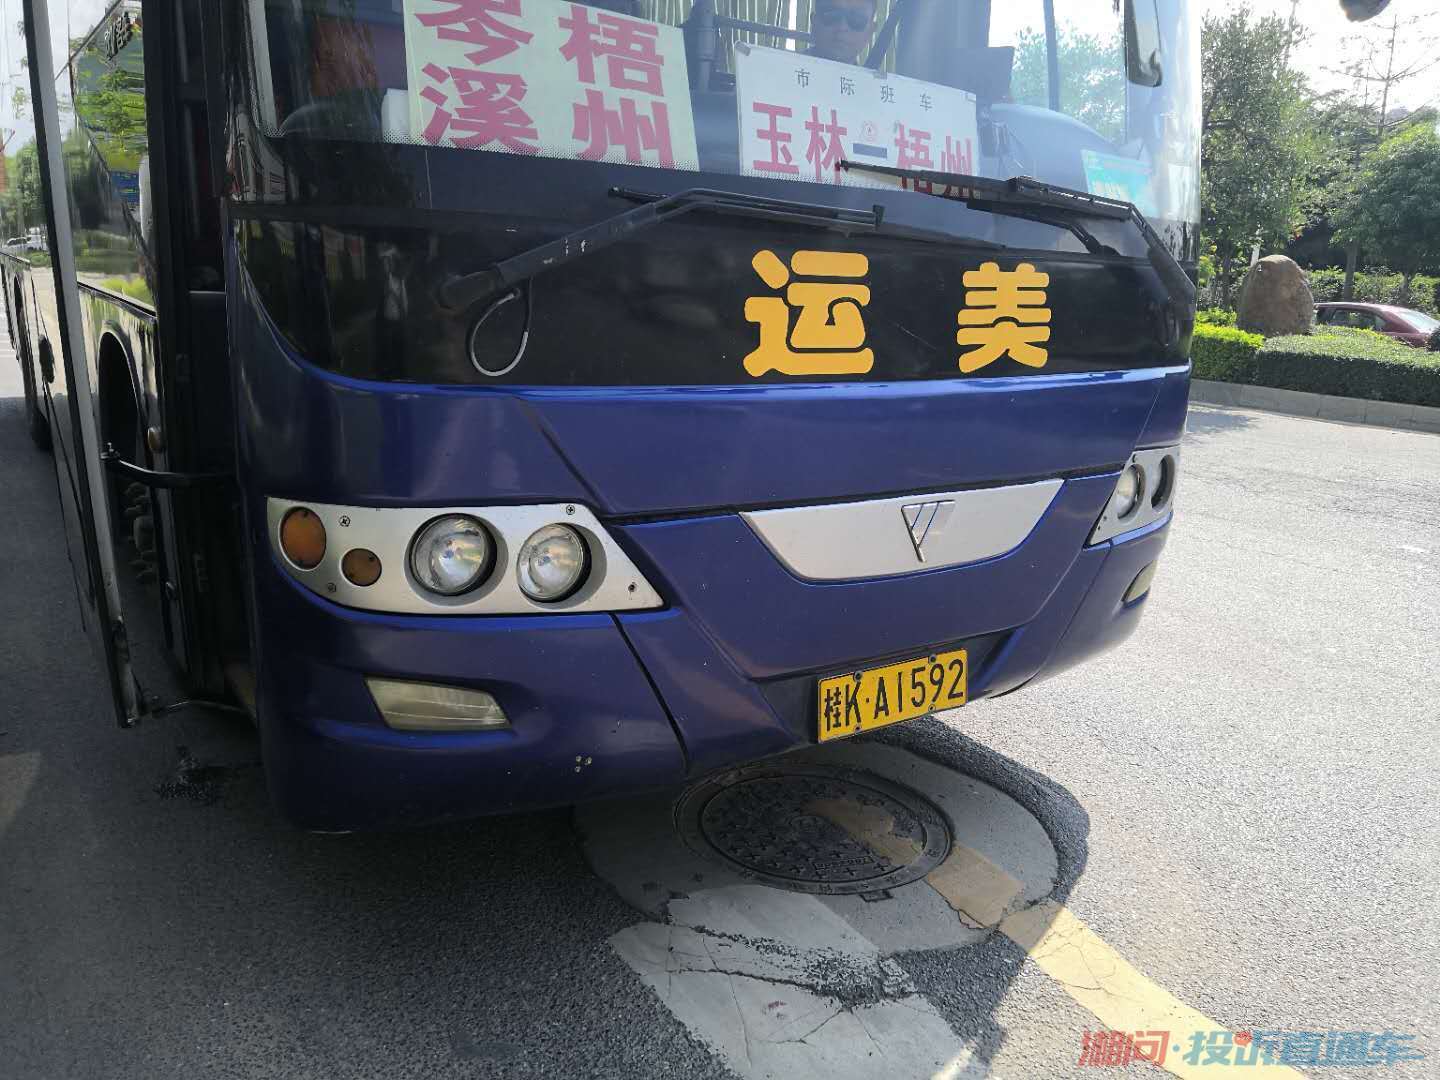 投诉广西壮族自治区玉林客运桂k·a1592车司机及乘务员